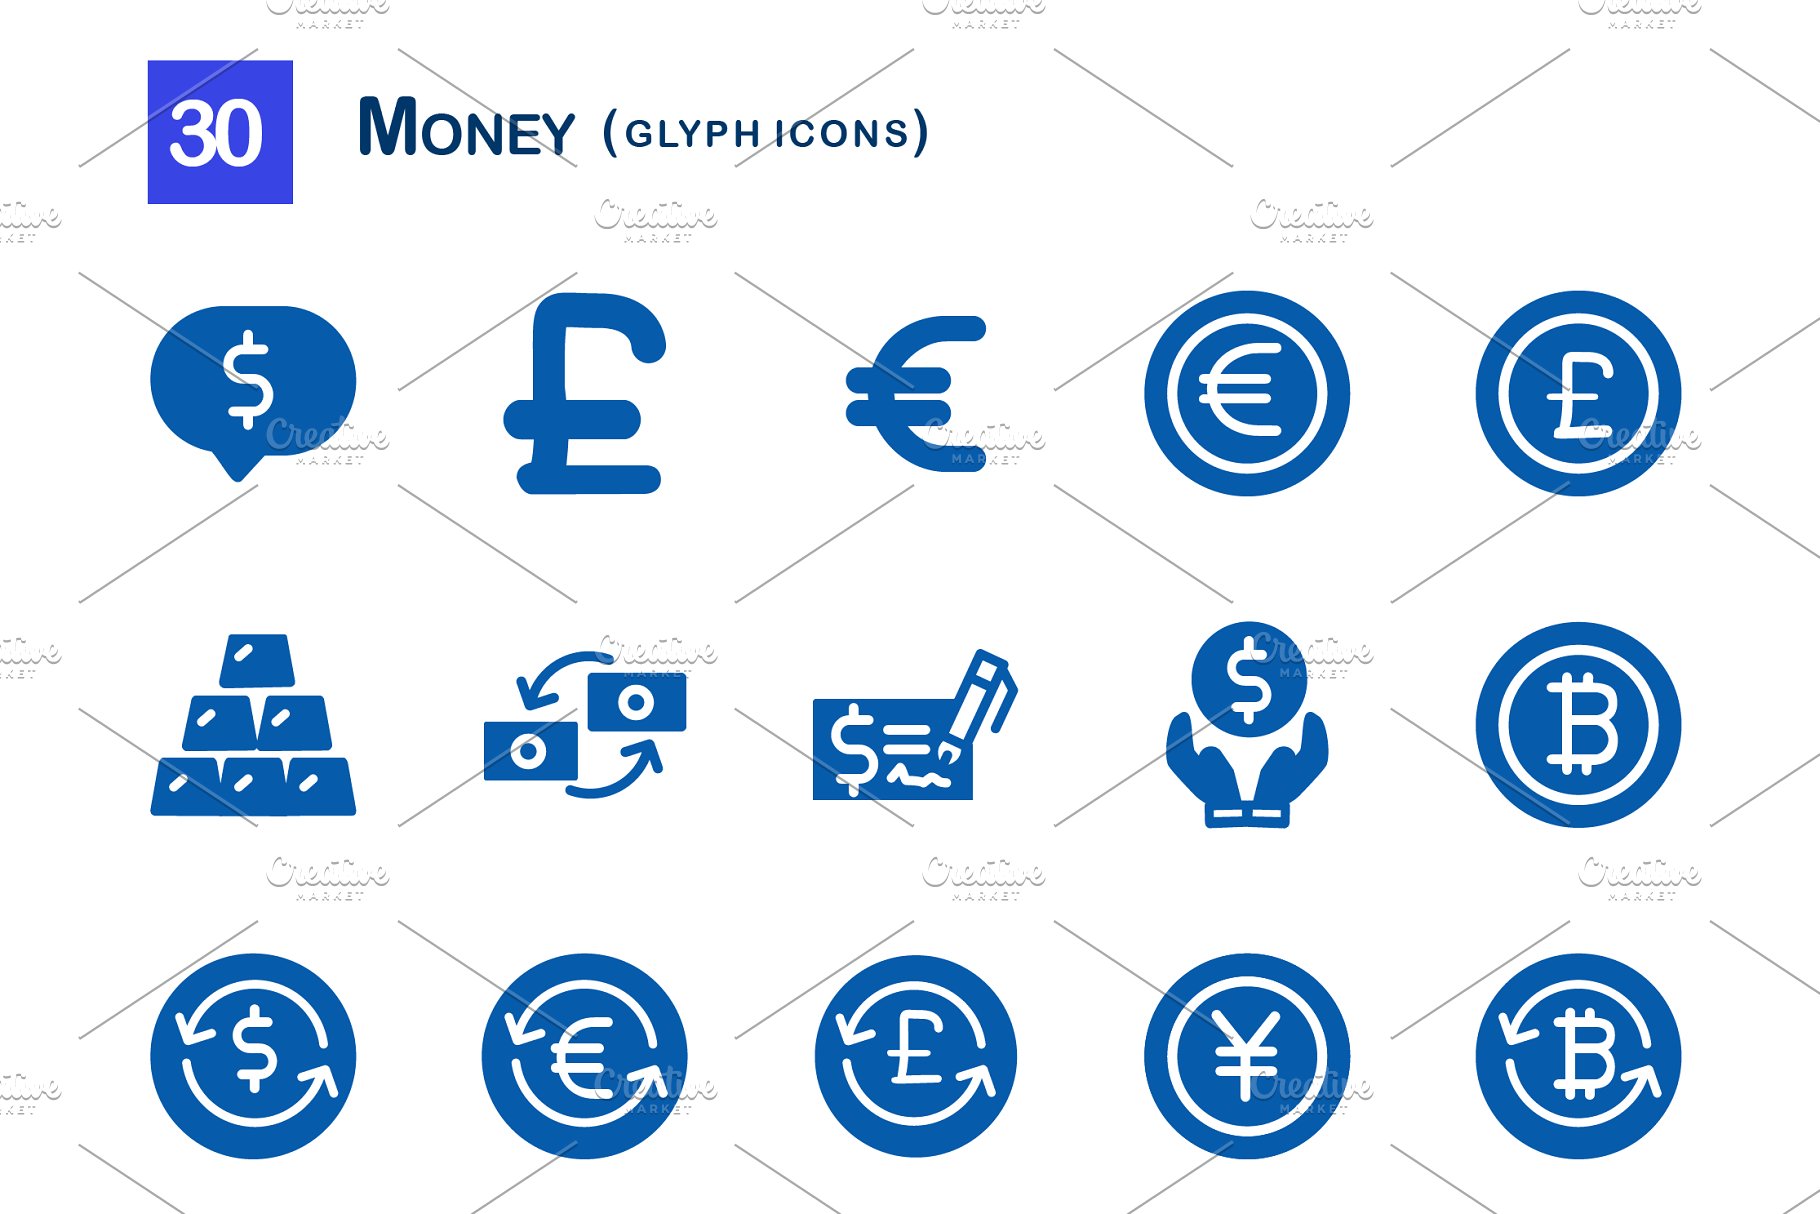 钱相关的图标 30 Money Glyph Icons #9